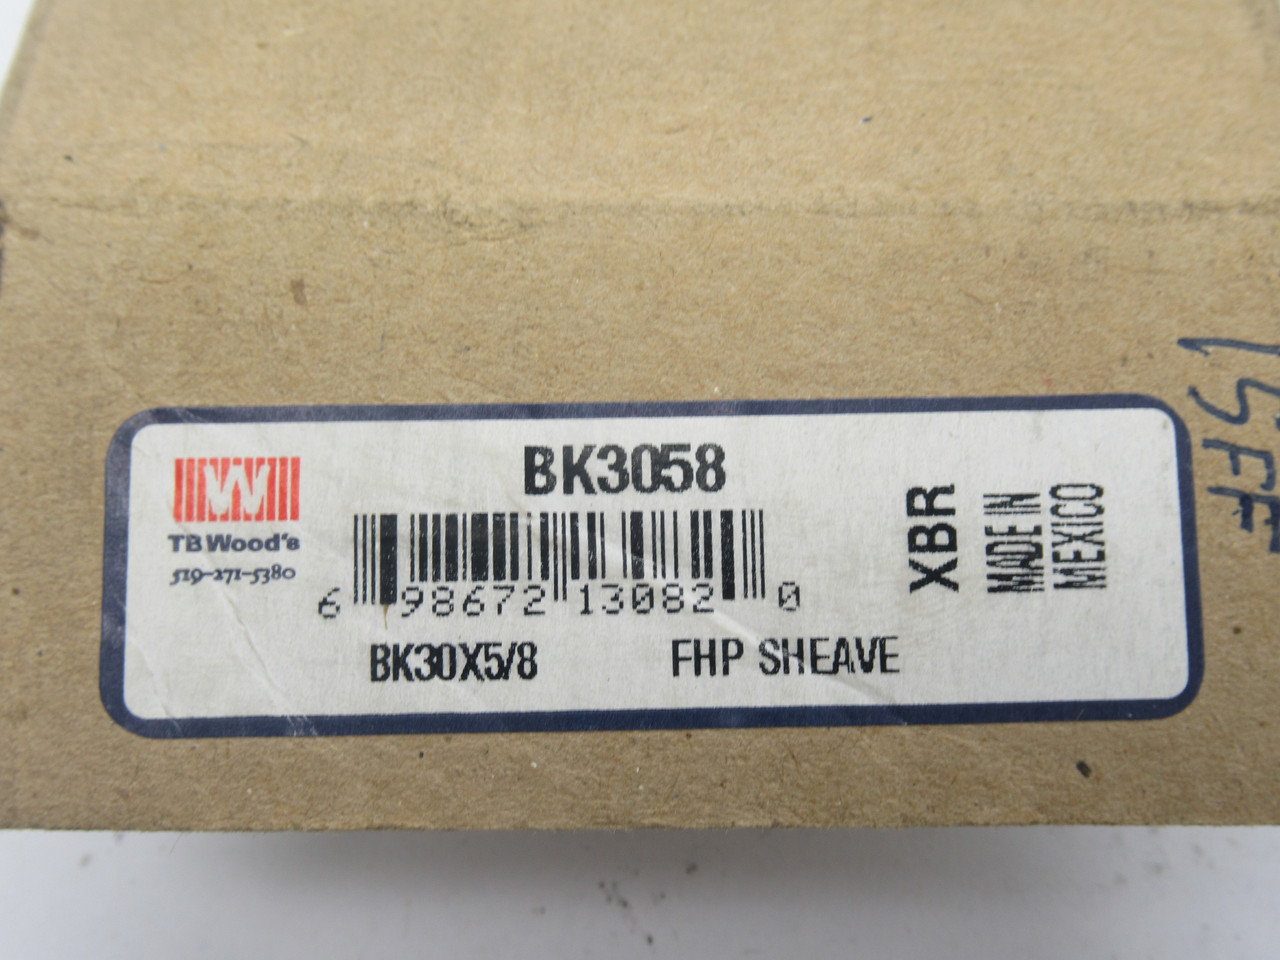 TB Wood's BK3058 FHP Sheave 5/8" Bore 1 Groove 3.15" OD *Shelf Wear* NEW